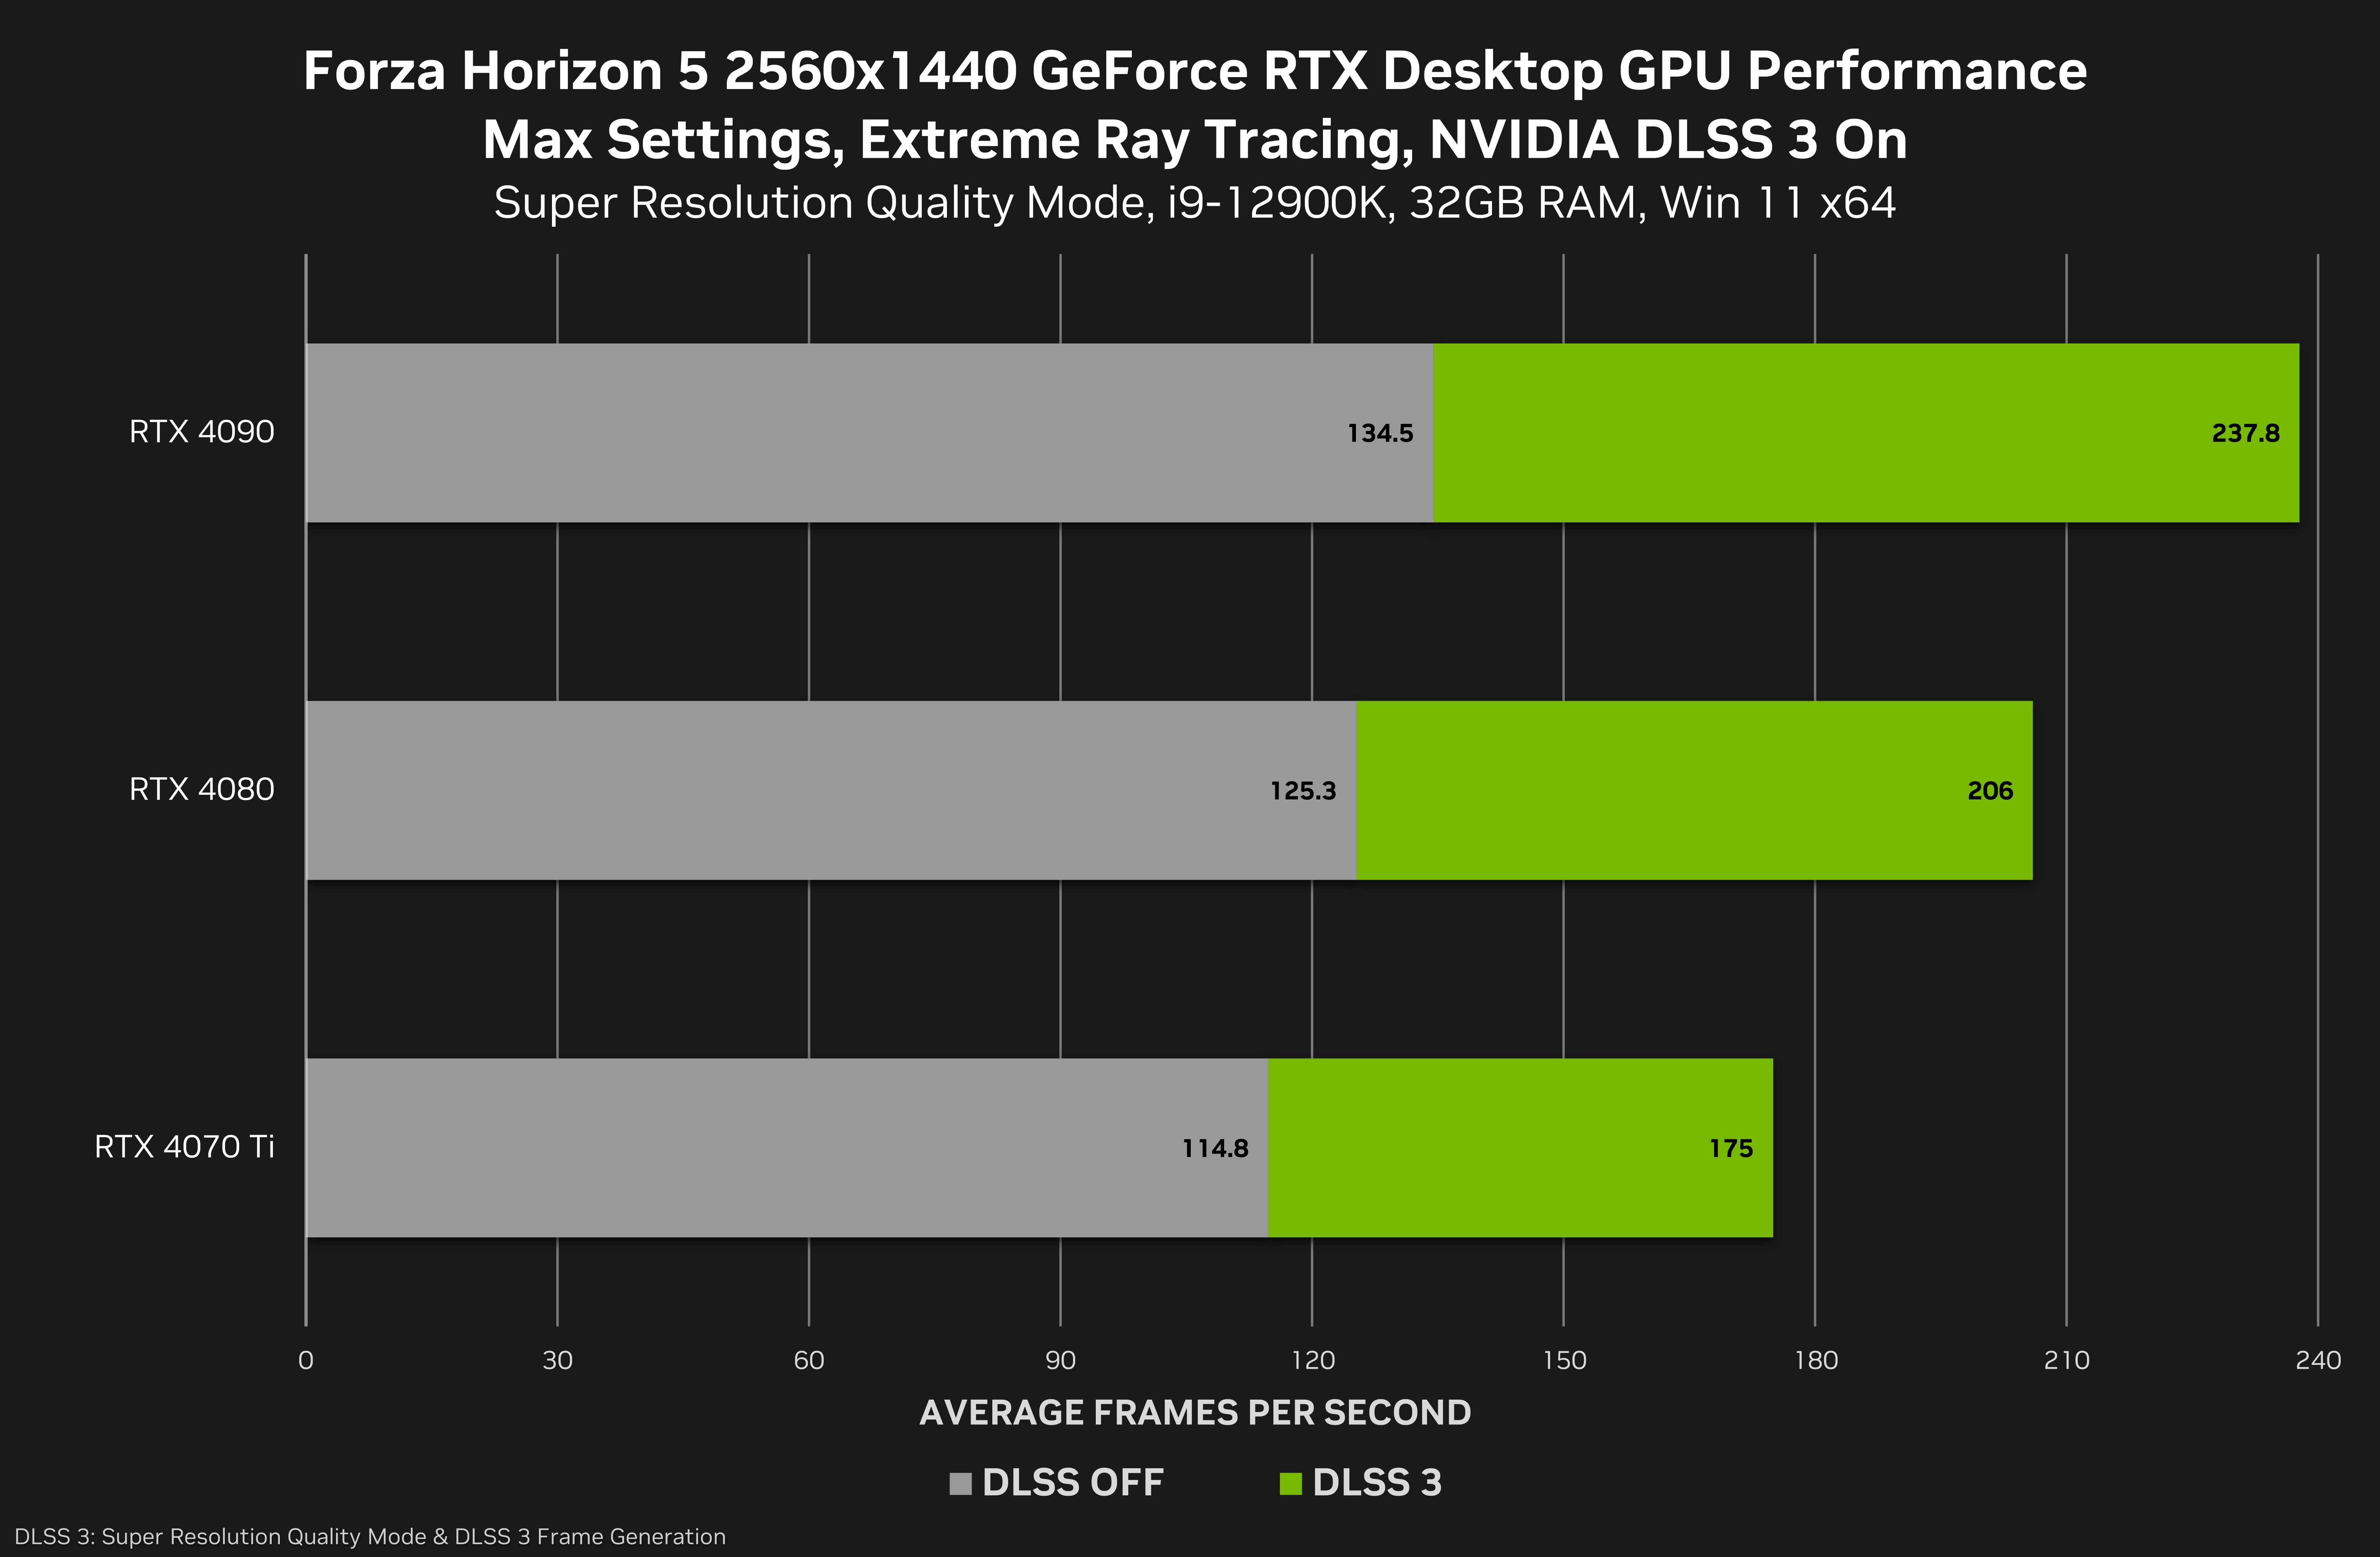 Forza Horizon 5 vai ganhar sua segunda expansão no início de 2023